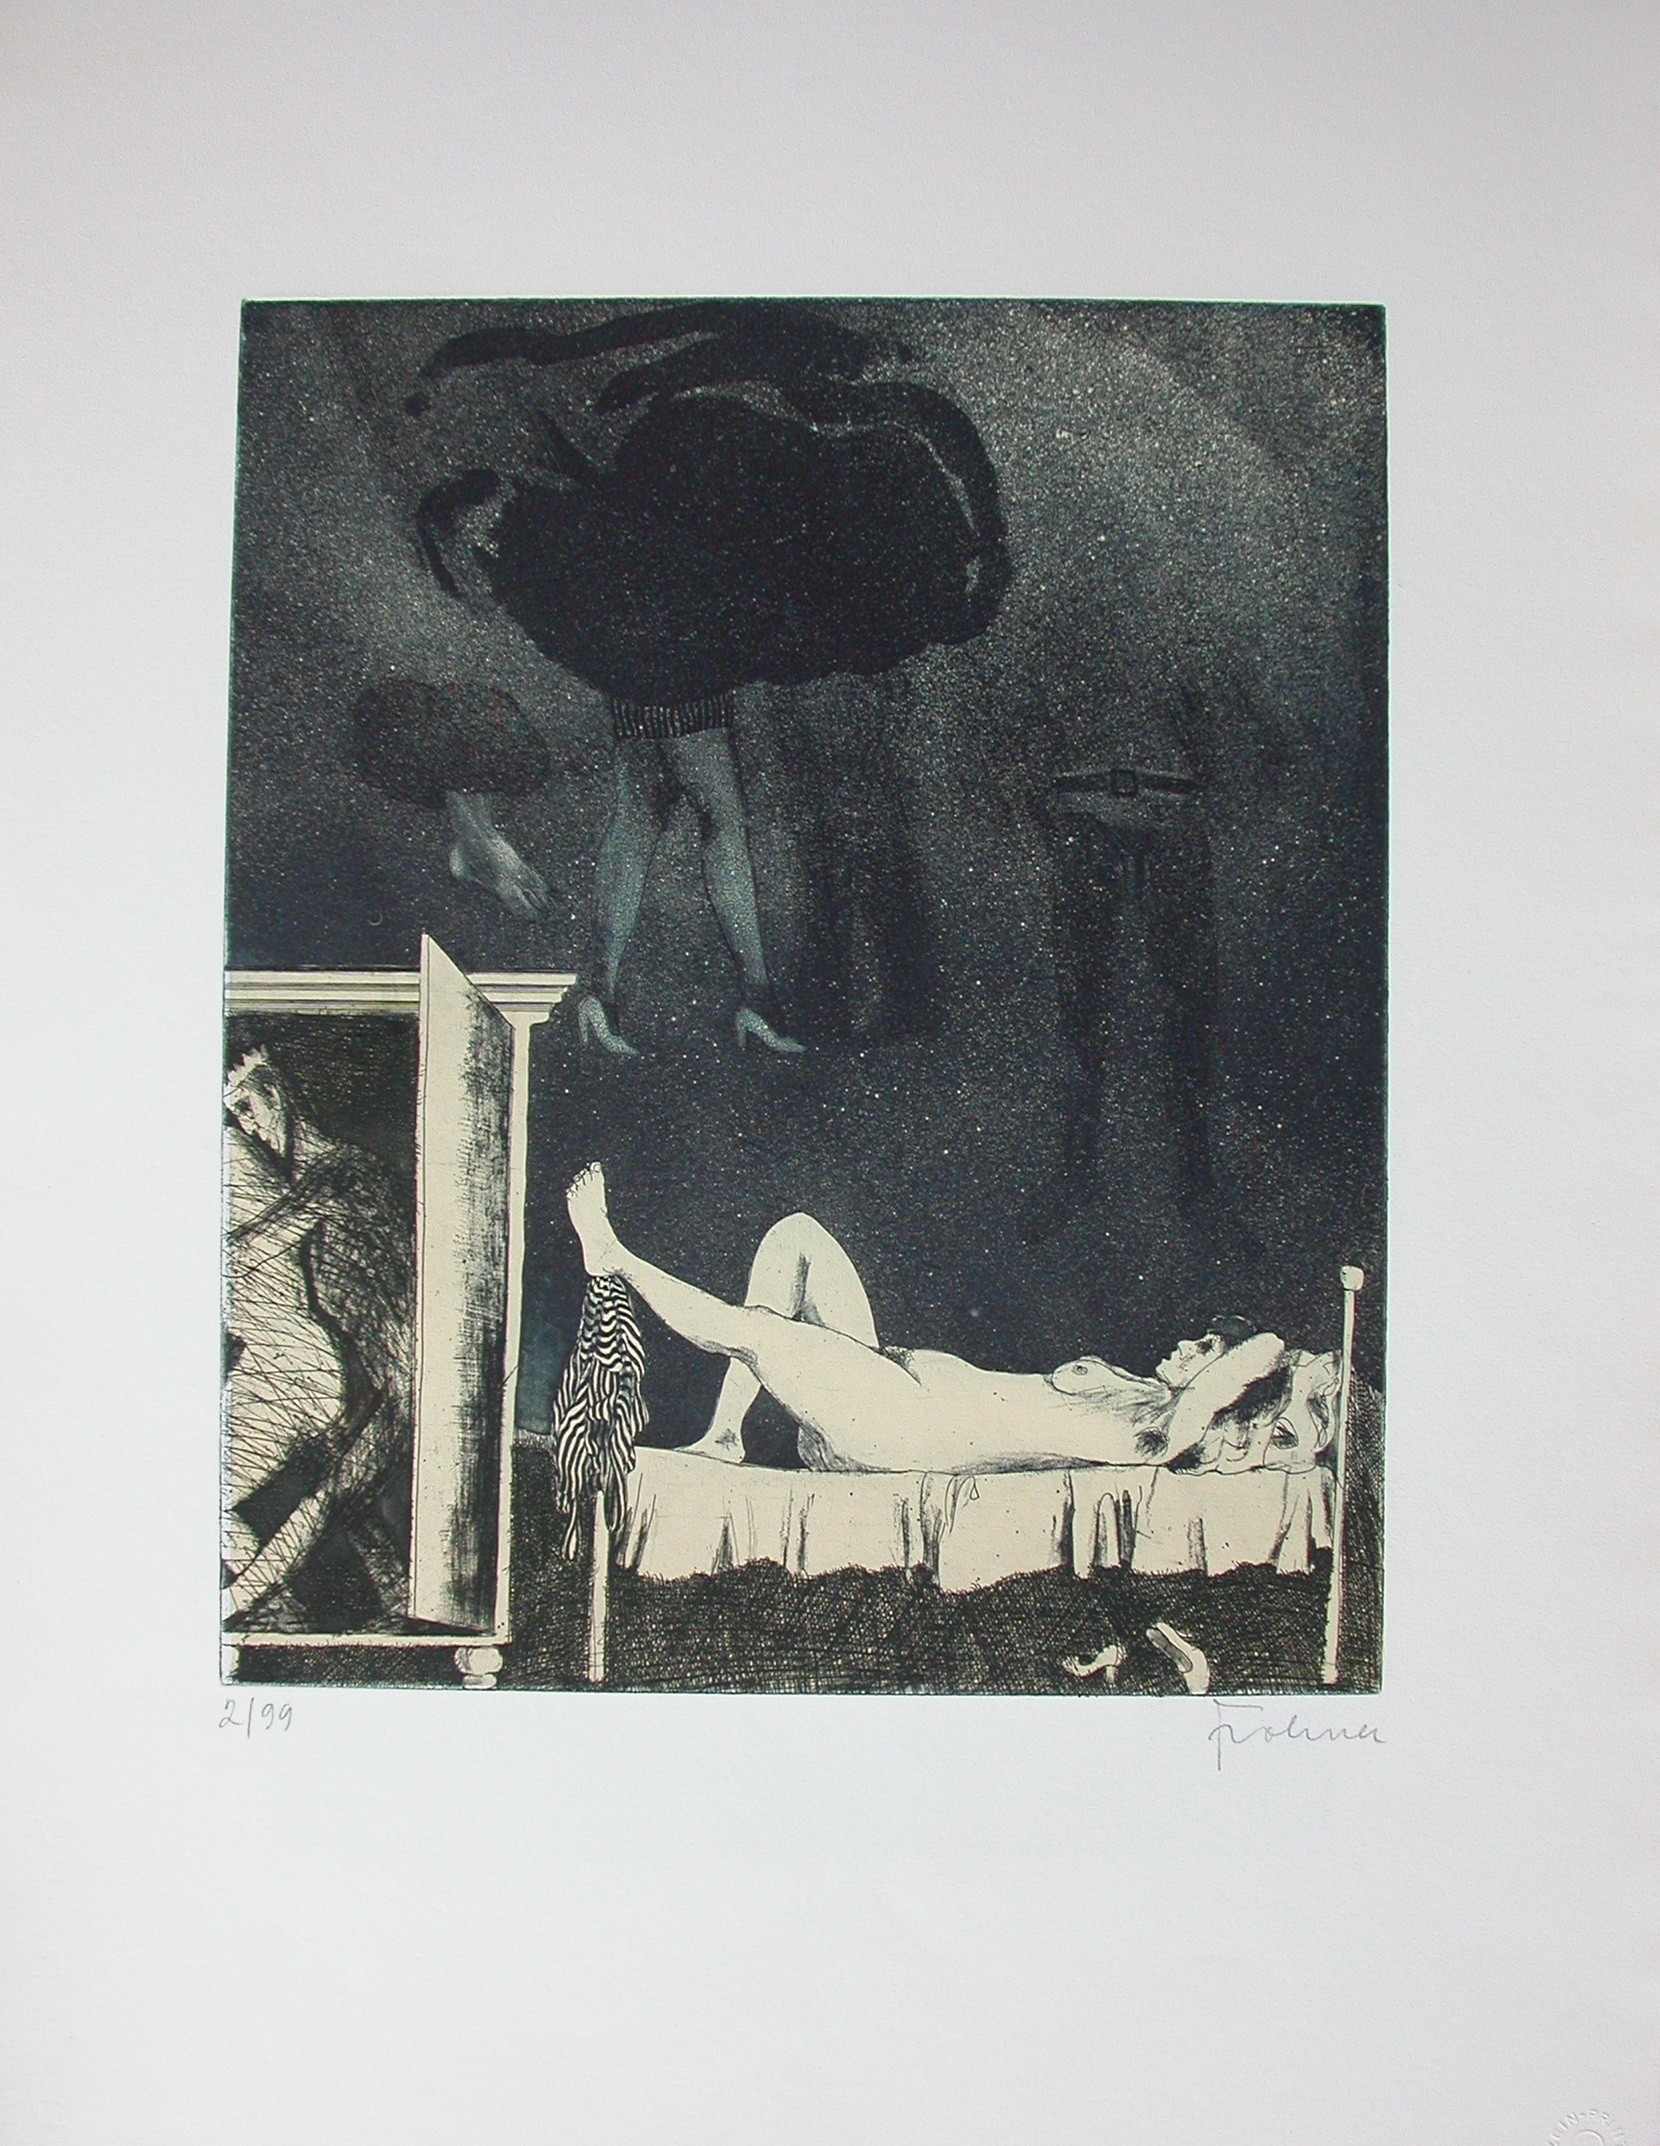 Frohner (1934 - 2007) "Nackte Frau im Bett liegend"